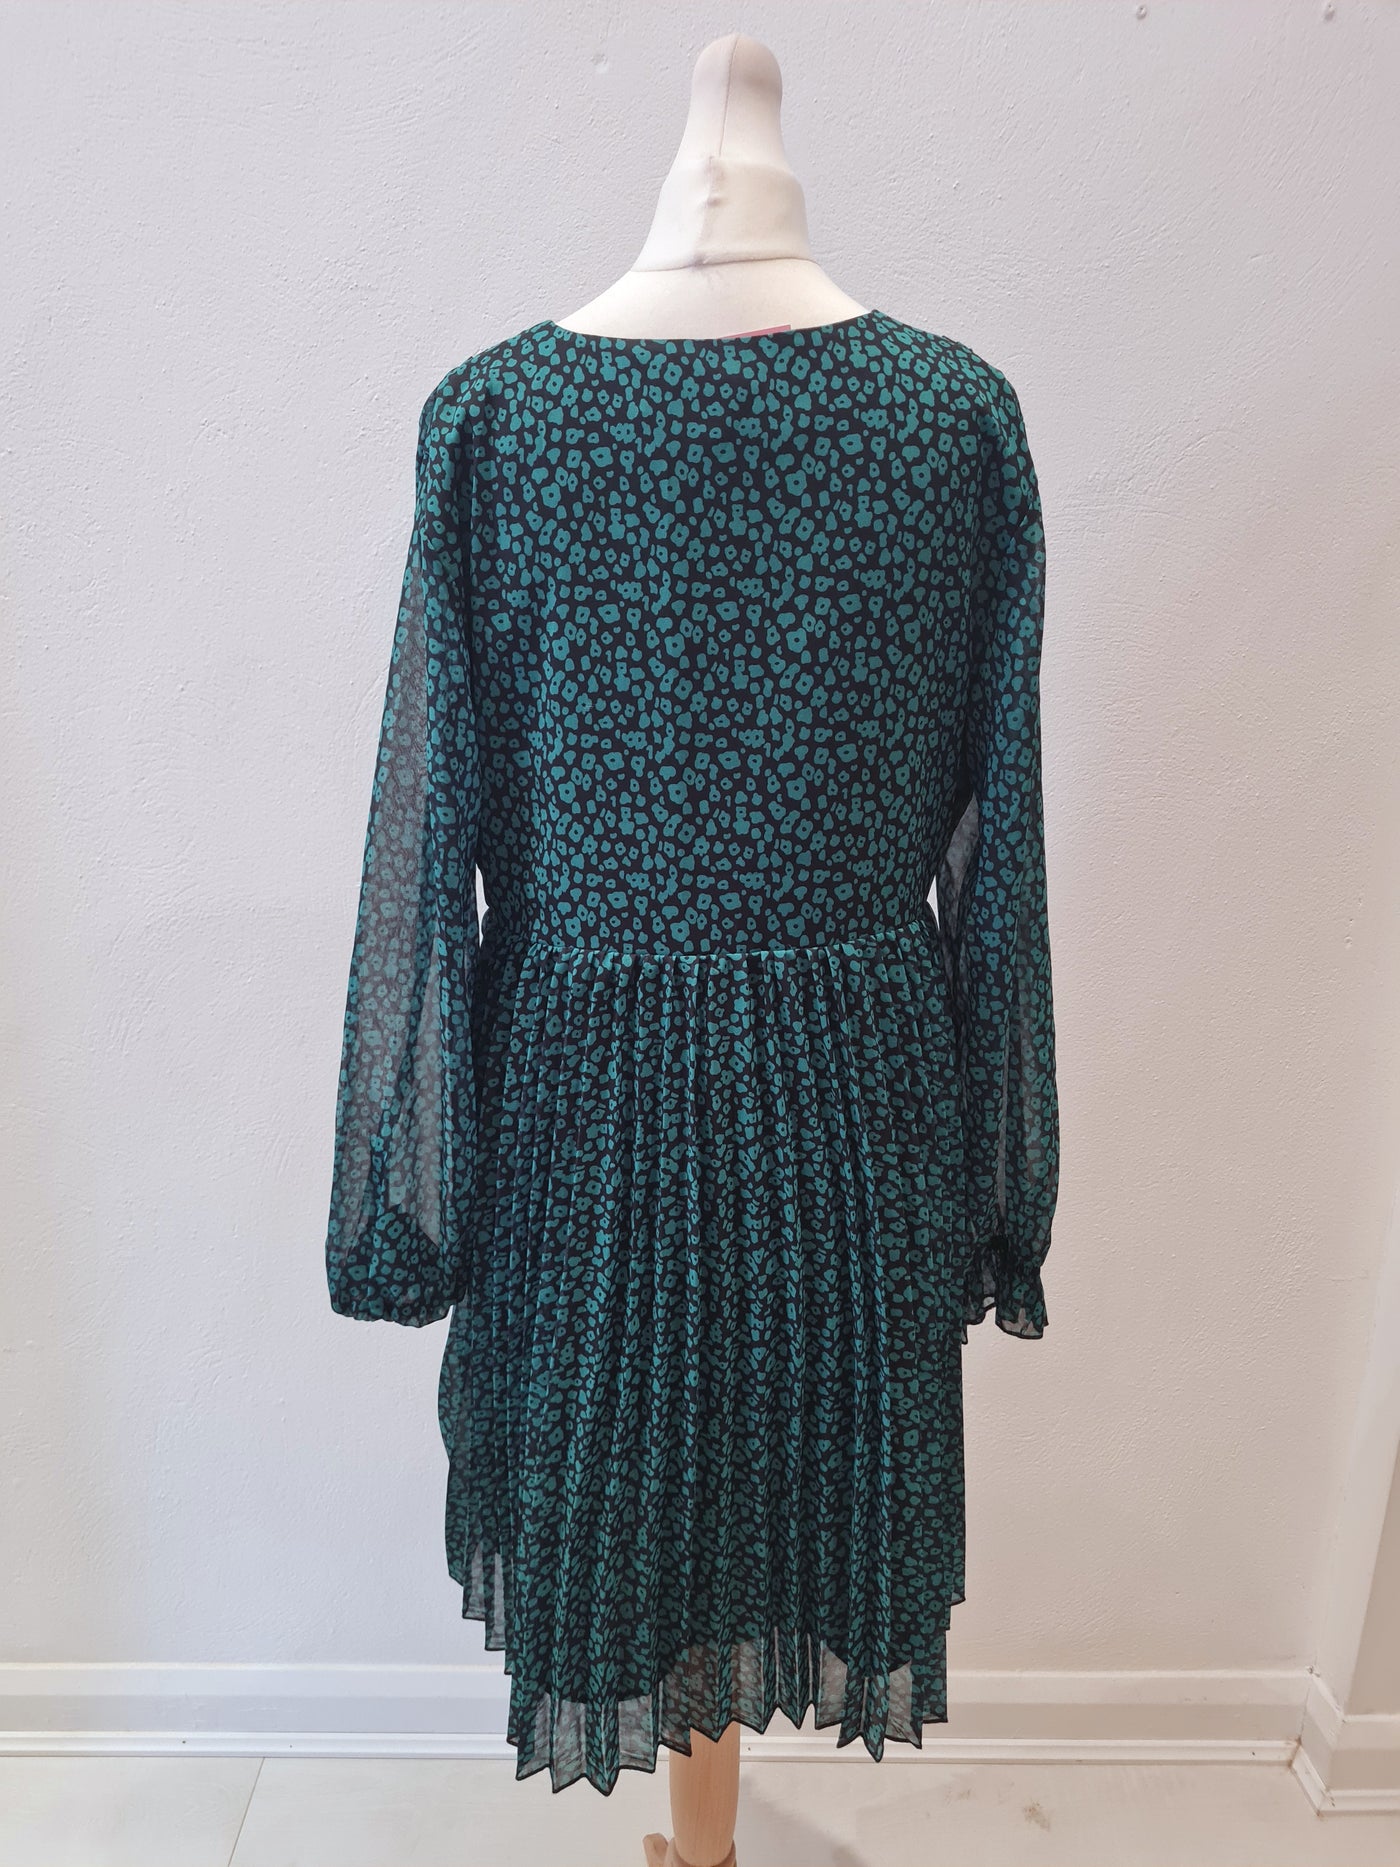 Lovie & Co Green & Black Pleated Dress Size L